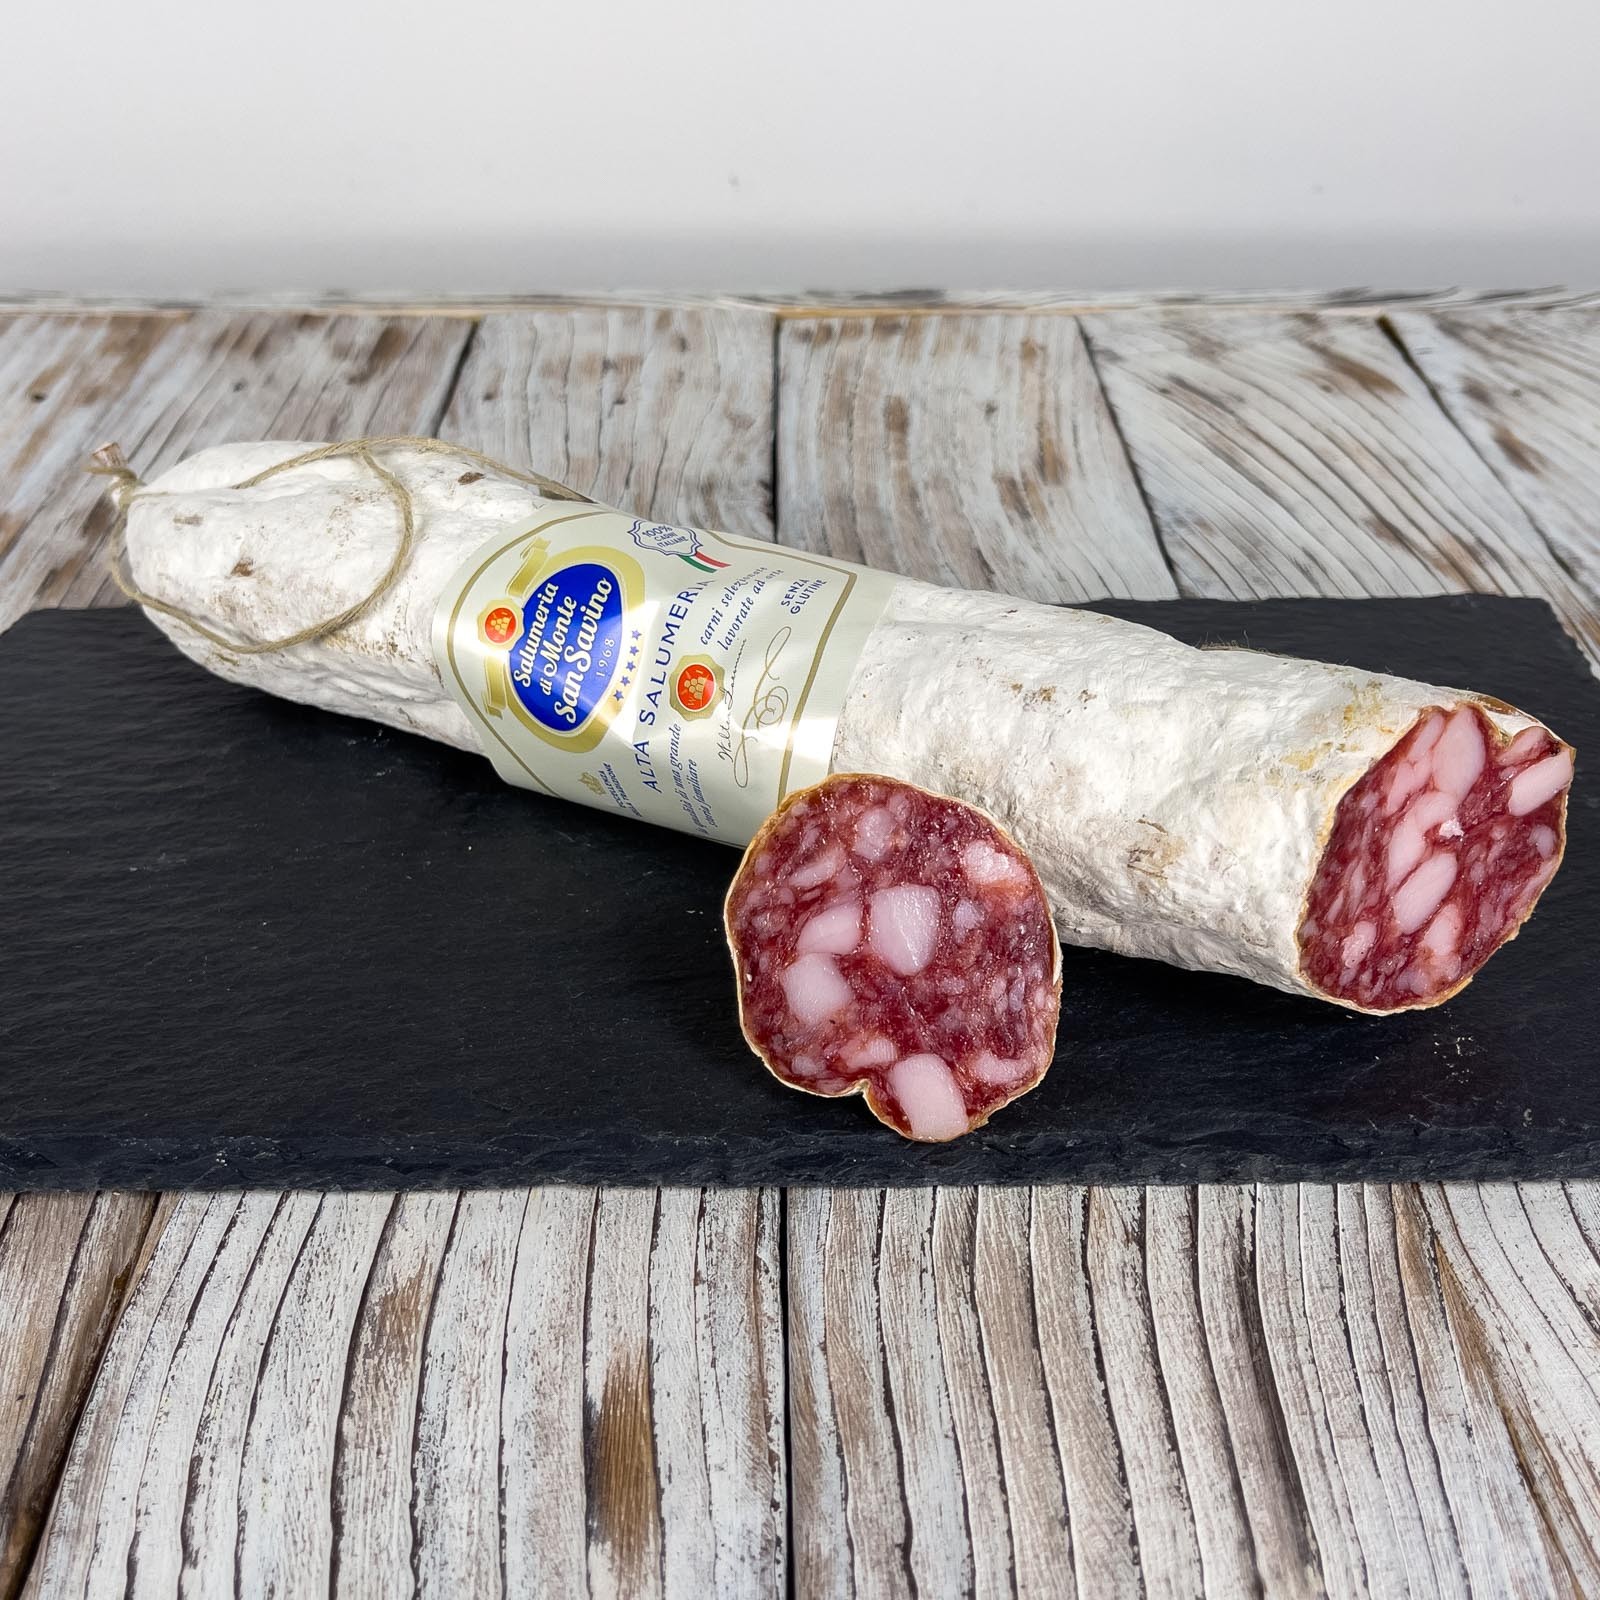 Toskanische Salami, ein Klassiker der Tradition. Diese Version von Toskanische Salami hat ein Nettogewicht von ca. 500 g und ist Im Ganzen Stück In Naturdarm verpackt.